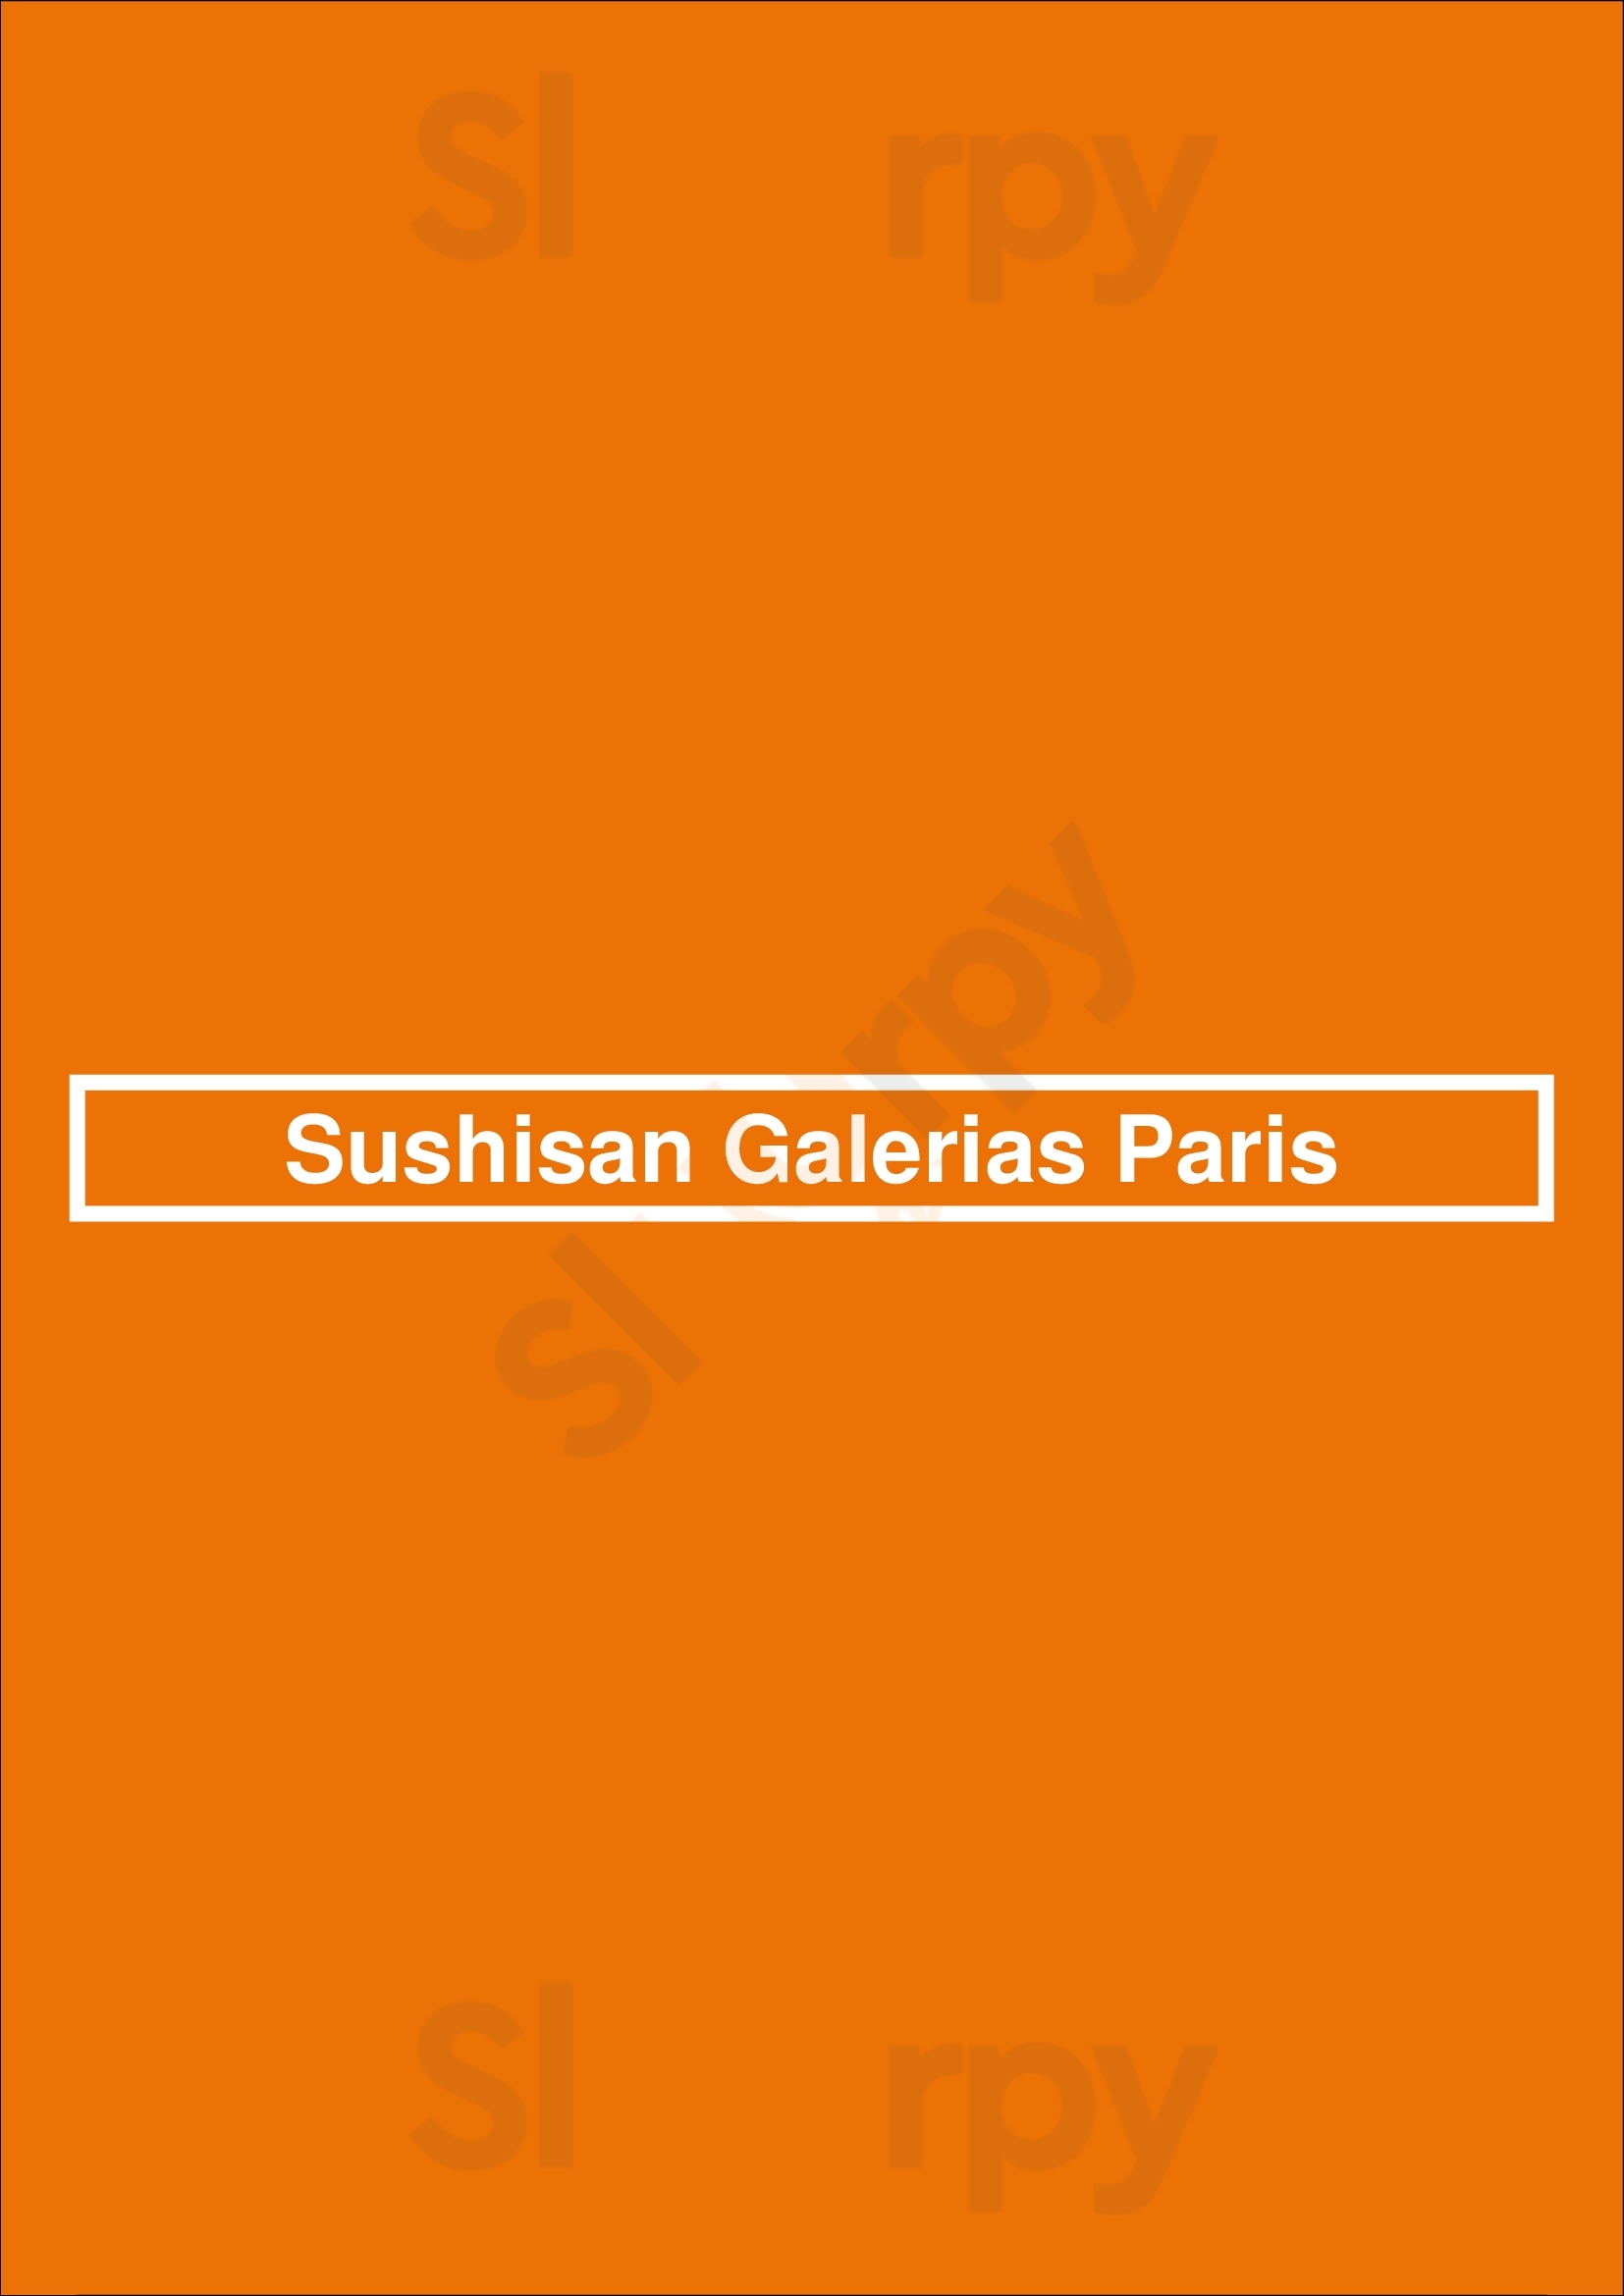 Sushisan Galerias Paris Porto Menu - 1